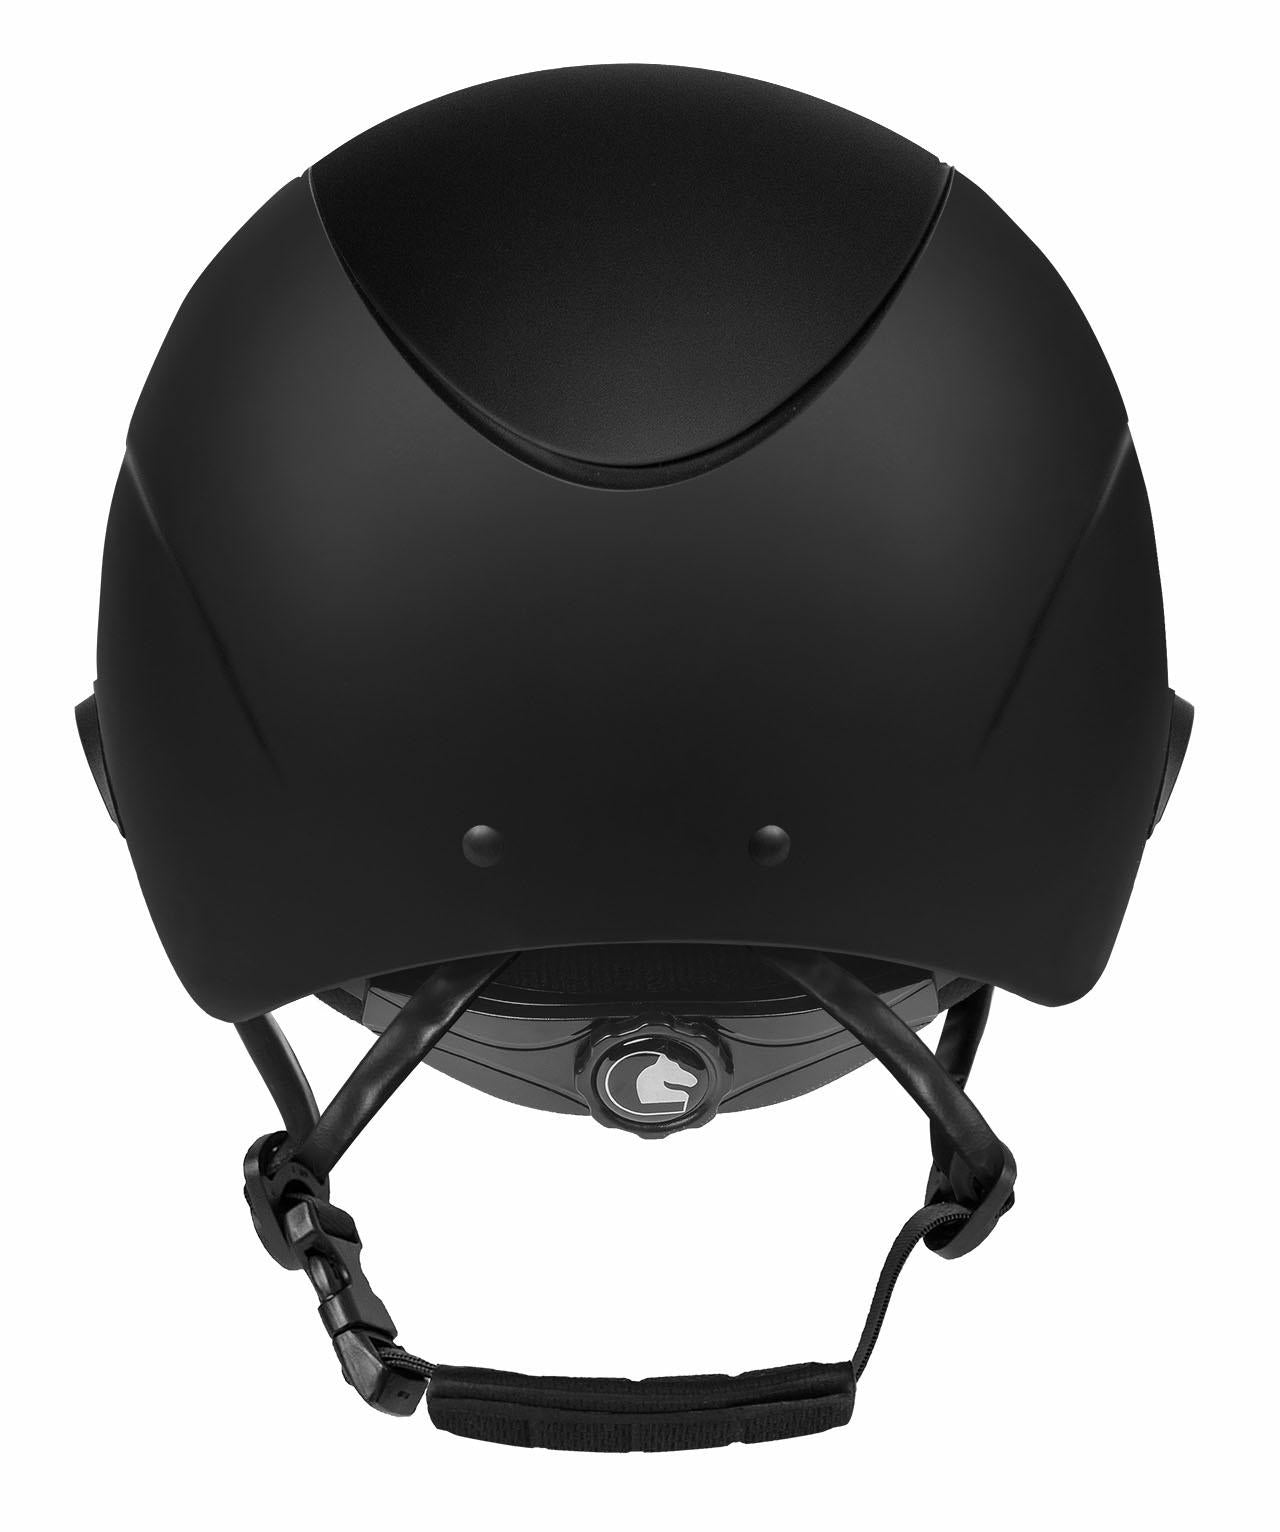 adjustable riding helmet